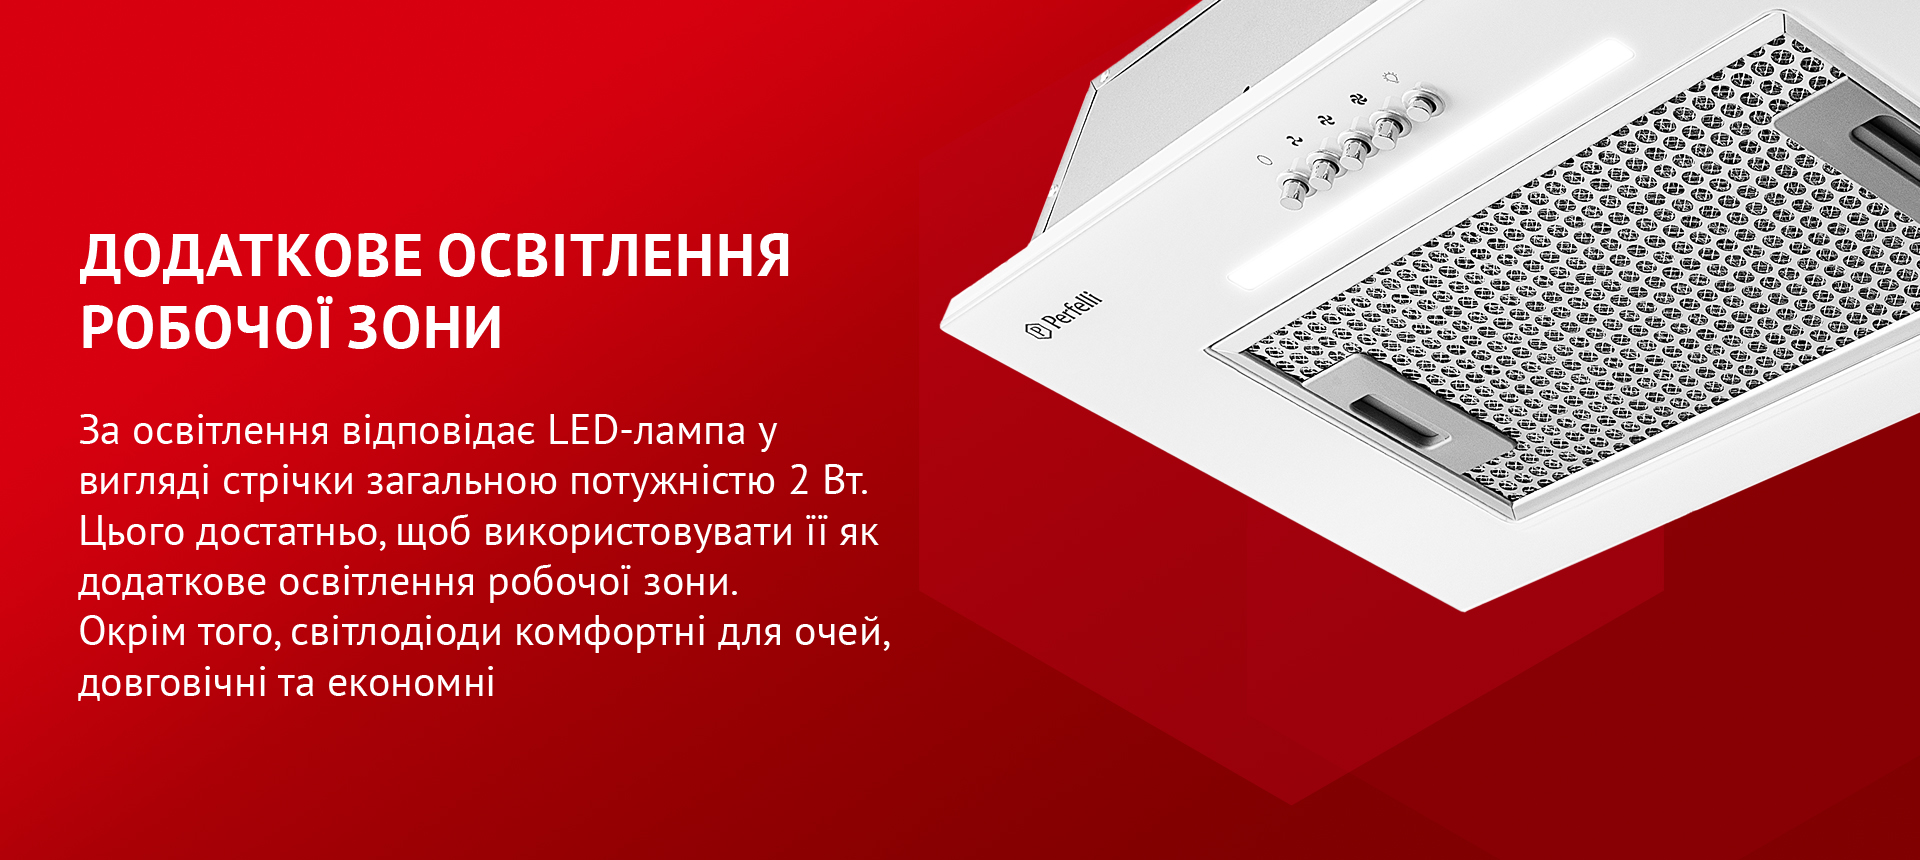 За освітлення відповідає LED-лампа у вигляді стрічки загальною потужністю 2 Вт. Цього достатньо, щоб використовувати її як додаткове освітлення робочої зони. Окрім того, світлодіоди комфортні для очей, довговічні та економні